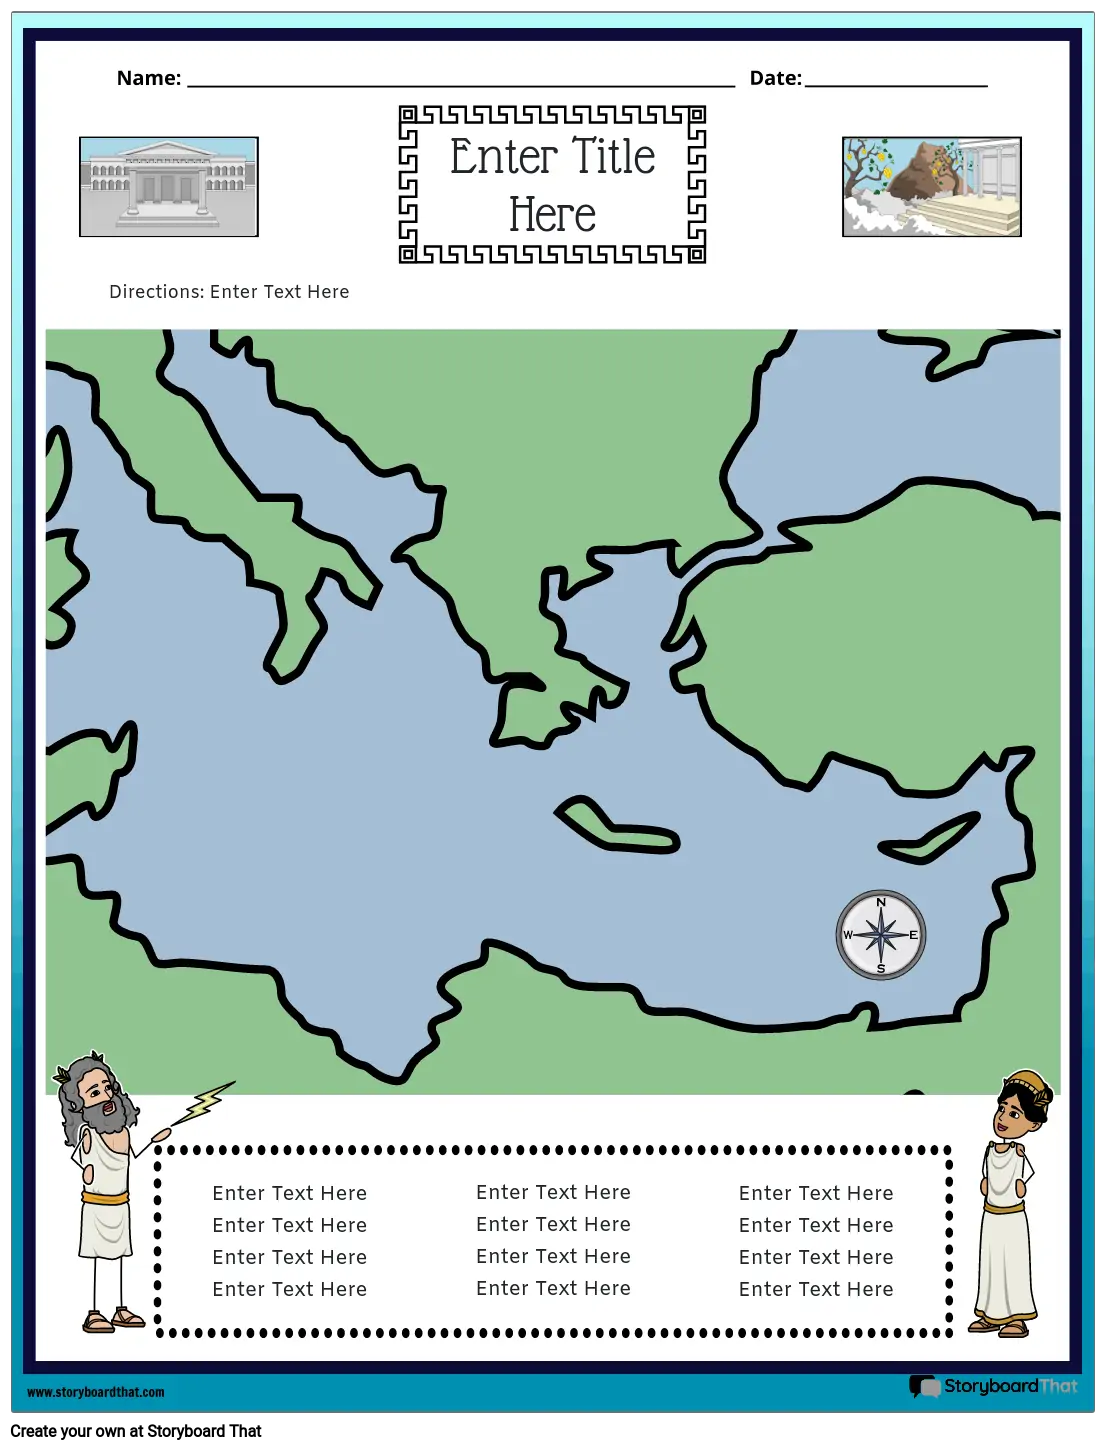 Mapa da Grécia Antiga